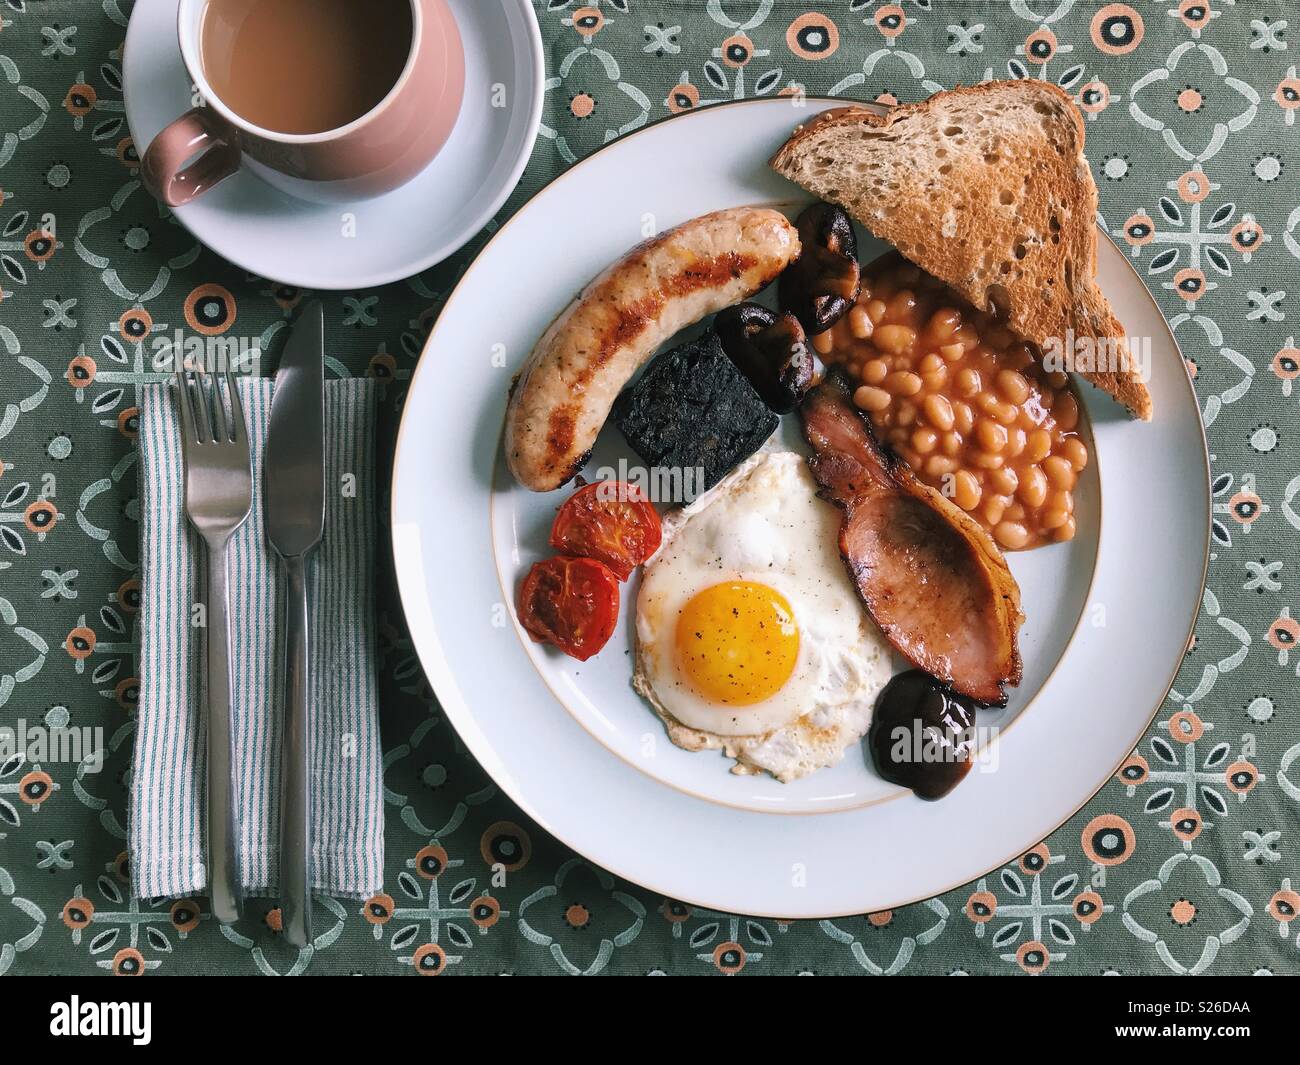 Vista aérea de un desayuno inglés completo casera, con salchichas, tomates, morcilla, setas, alubias, tostadas, salsa marrón, un huevo frito, y una taza de té. Foto de stock